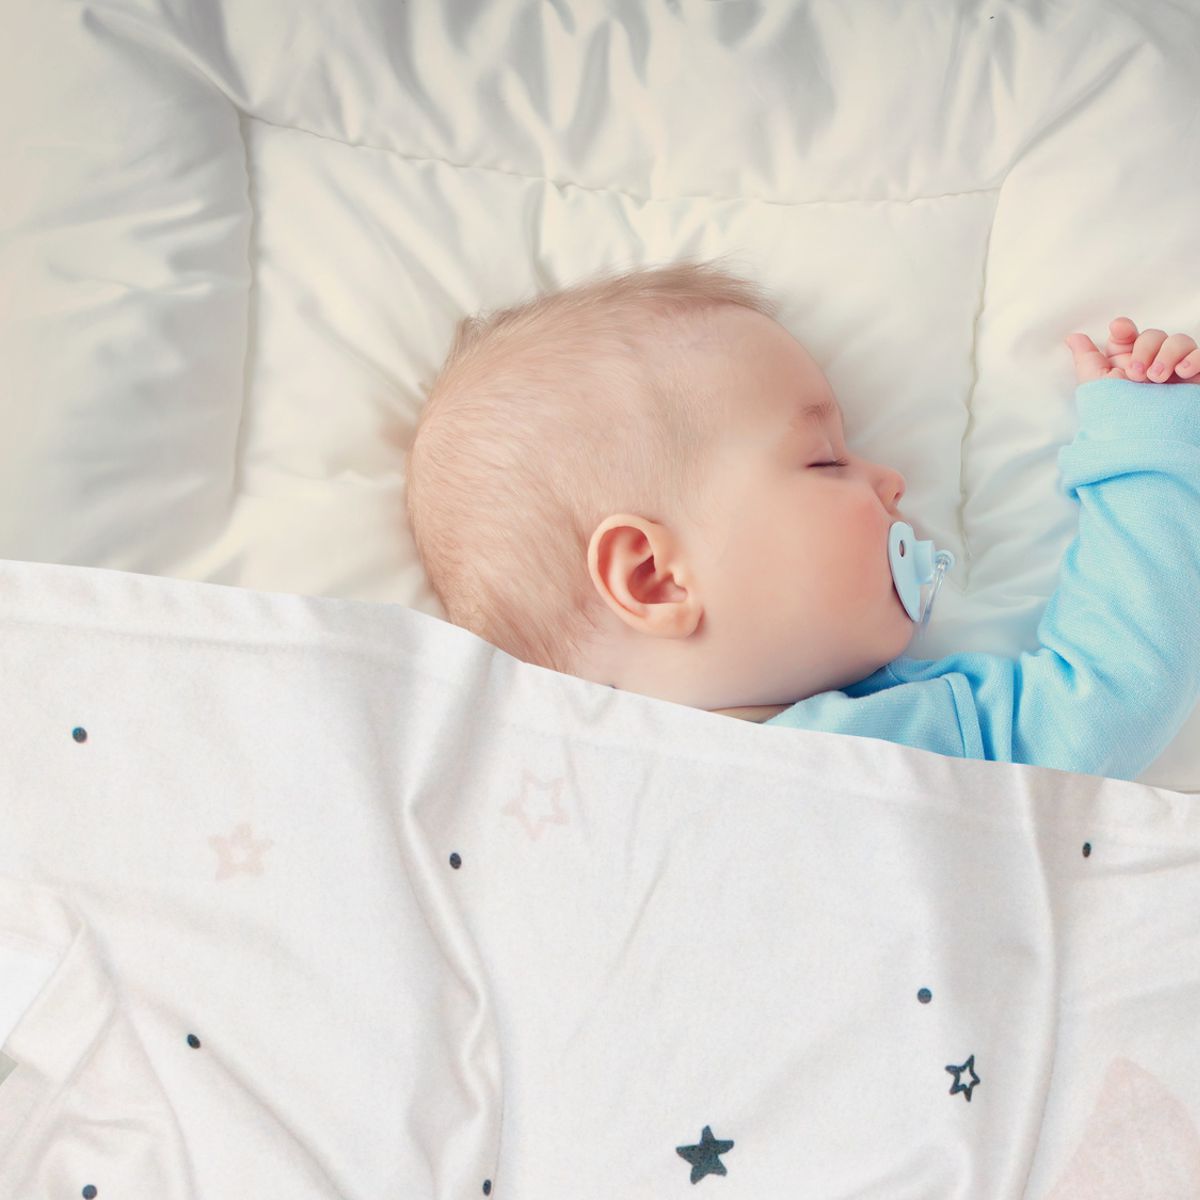 Baby schläft mit Babydecke mit NAmen